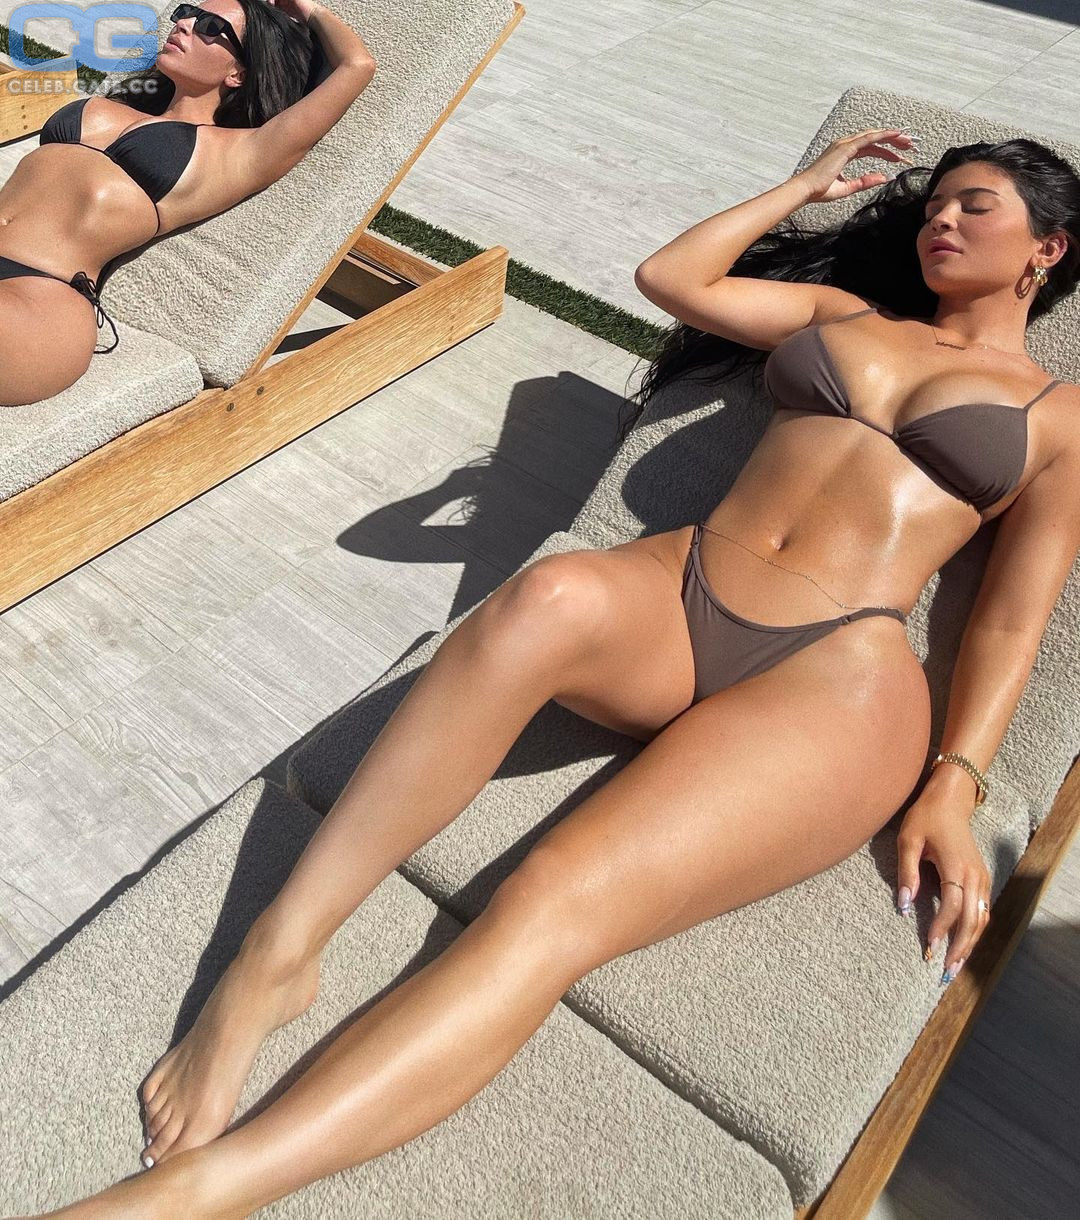 Kylie Jenner nude photos